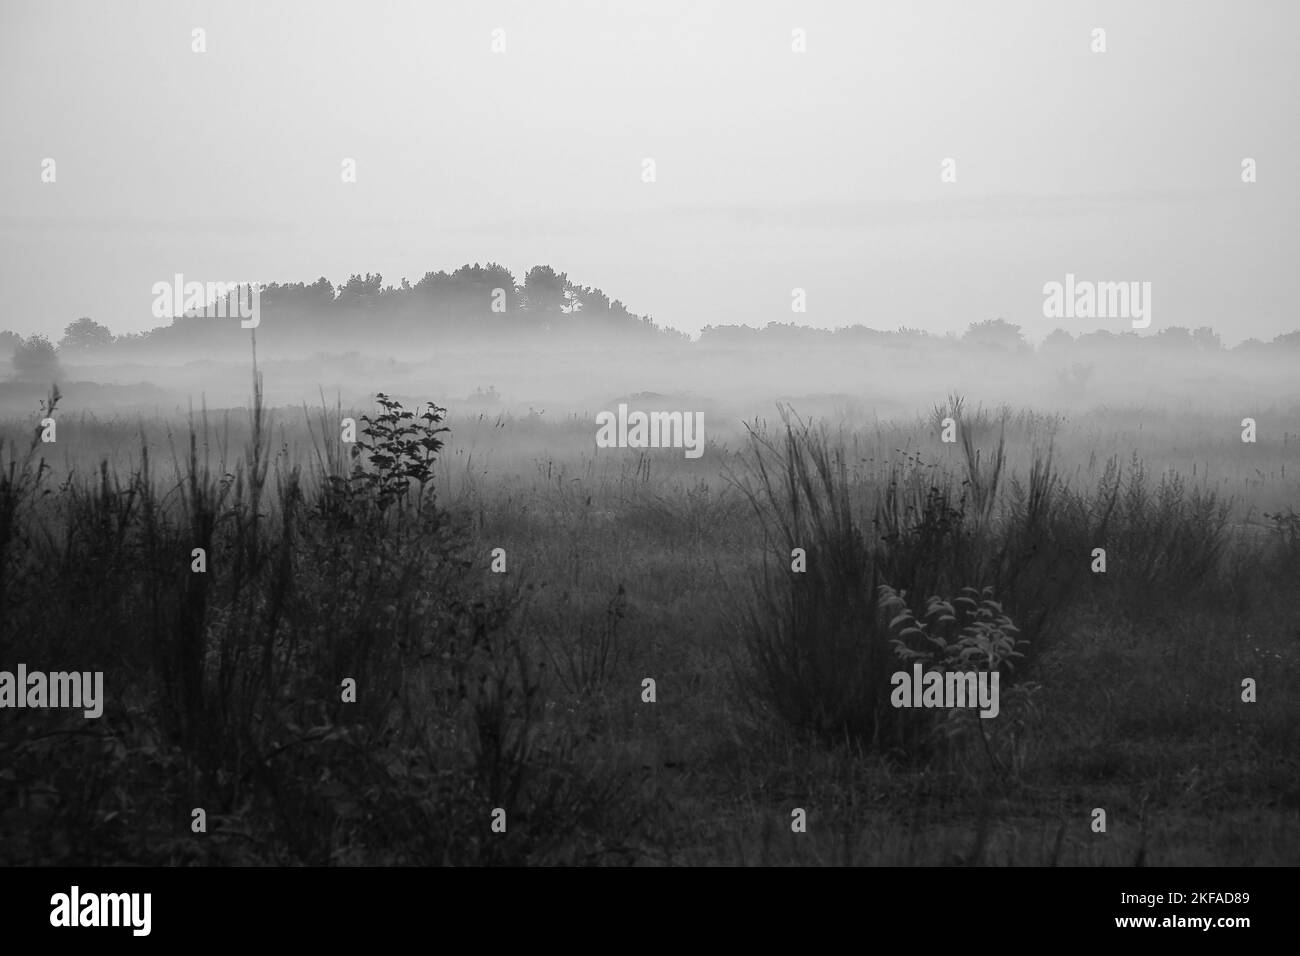 Terra anteriore sparata in bianco e nero con nebbia su erba e erica in Danimarca, di fronte alle dune. Alberi e nuvole di umore mistico. Ripresa orizzontale da Foto Stock